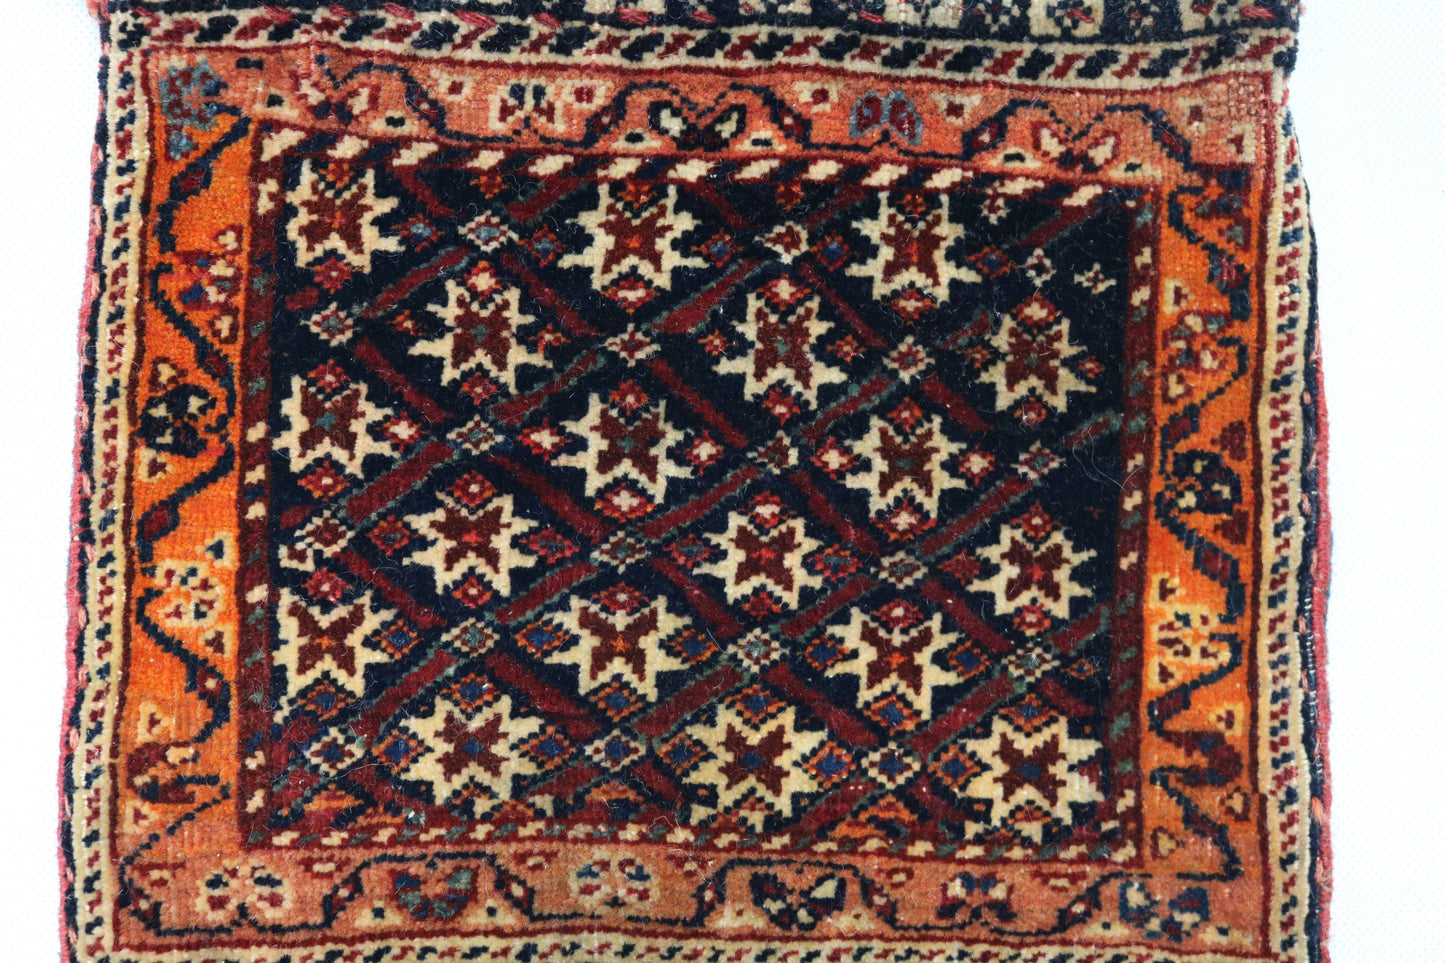 Antique Persian Qashqai small bag